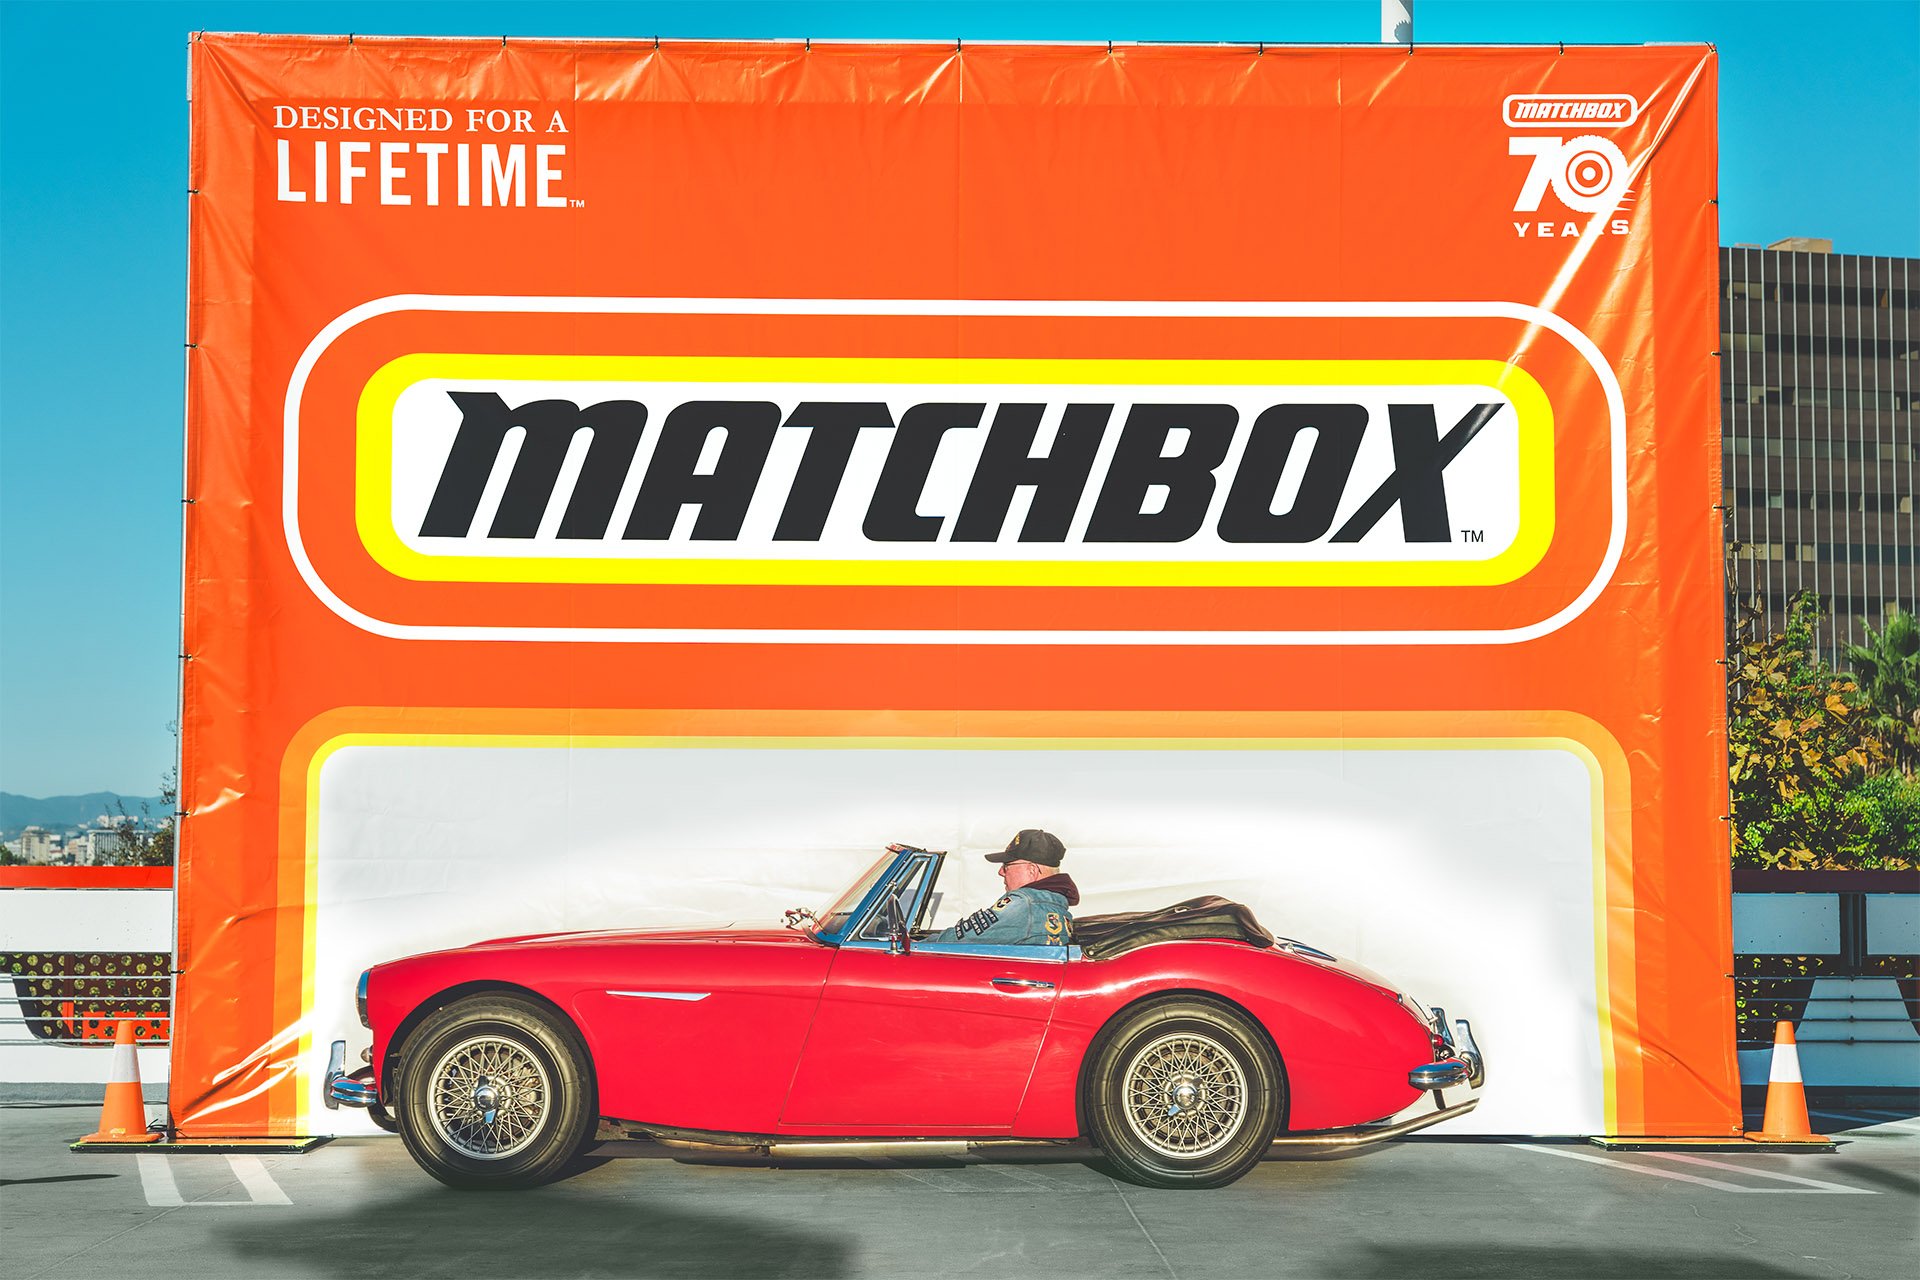 Petersen-Matchbox-Cruise-In-39.jpg